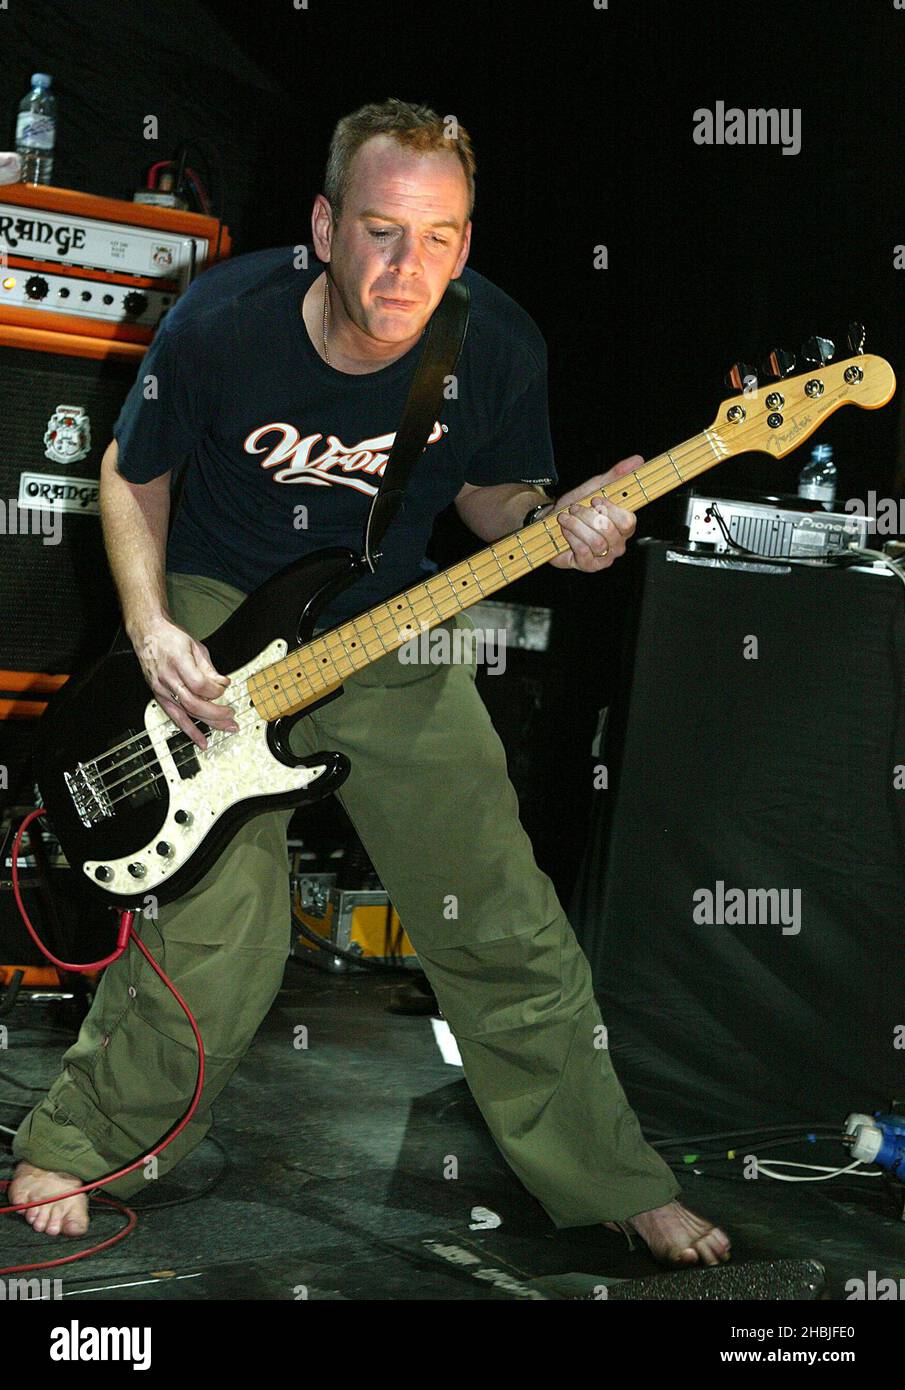 Norman Cook suona con la sua band Johnny Quality in stand-alone dopo il tour del mese scorso "biglietto di sola andata per Palookaville", promuovendo l'uscita di ottobre del suo quarto album in studio "Palookaville", presso la Carling Academy Brixton il 26 novembre 2004 a Londra. Foto Stock